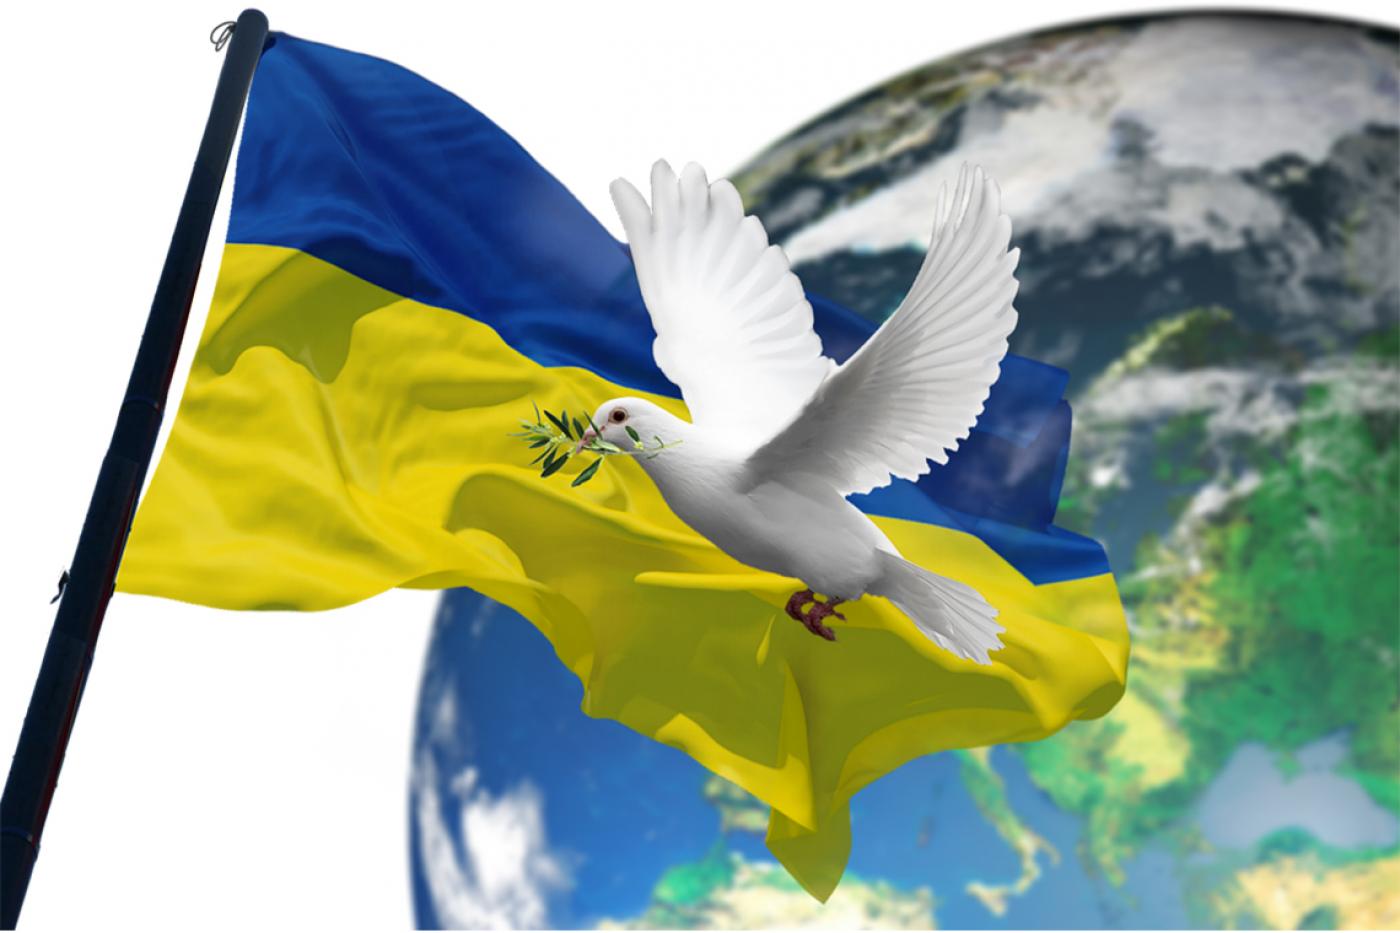 Ukrainekonflikt: Solidarität mit allen betroffenen Menschen &amp; Gewährleistung der Ernährungssicherheit